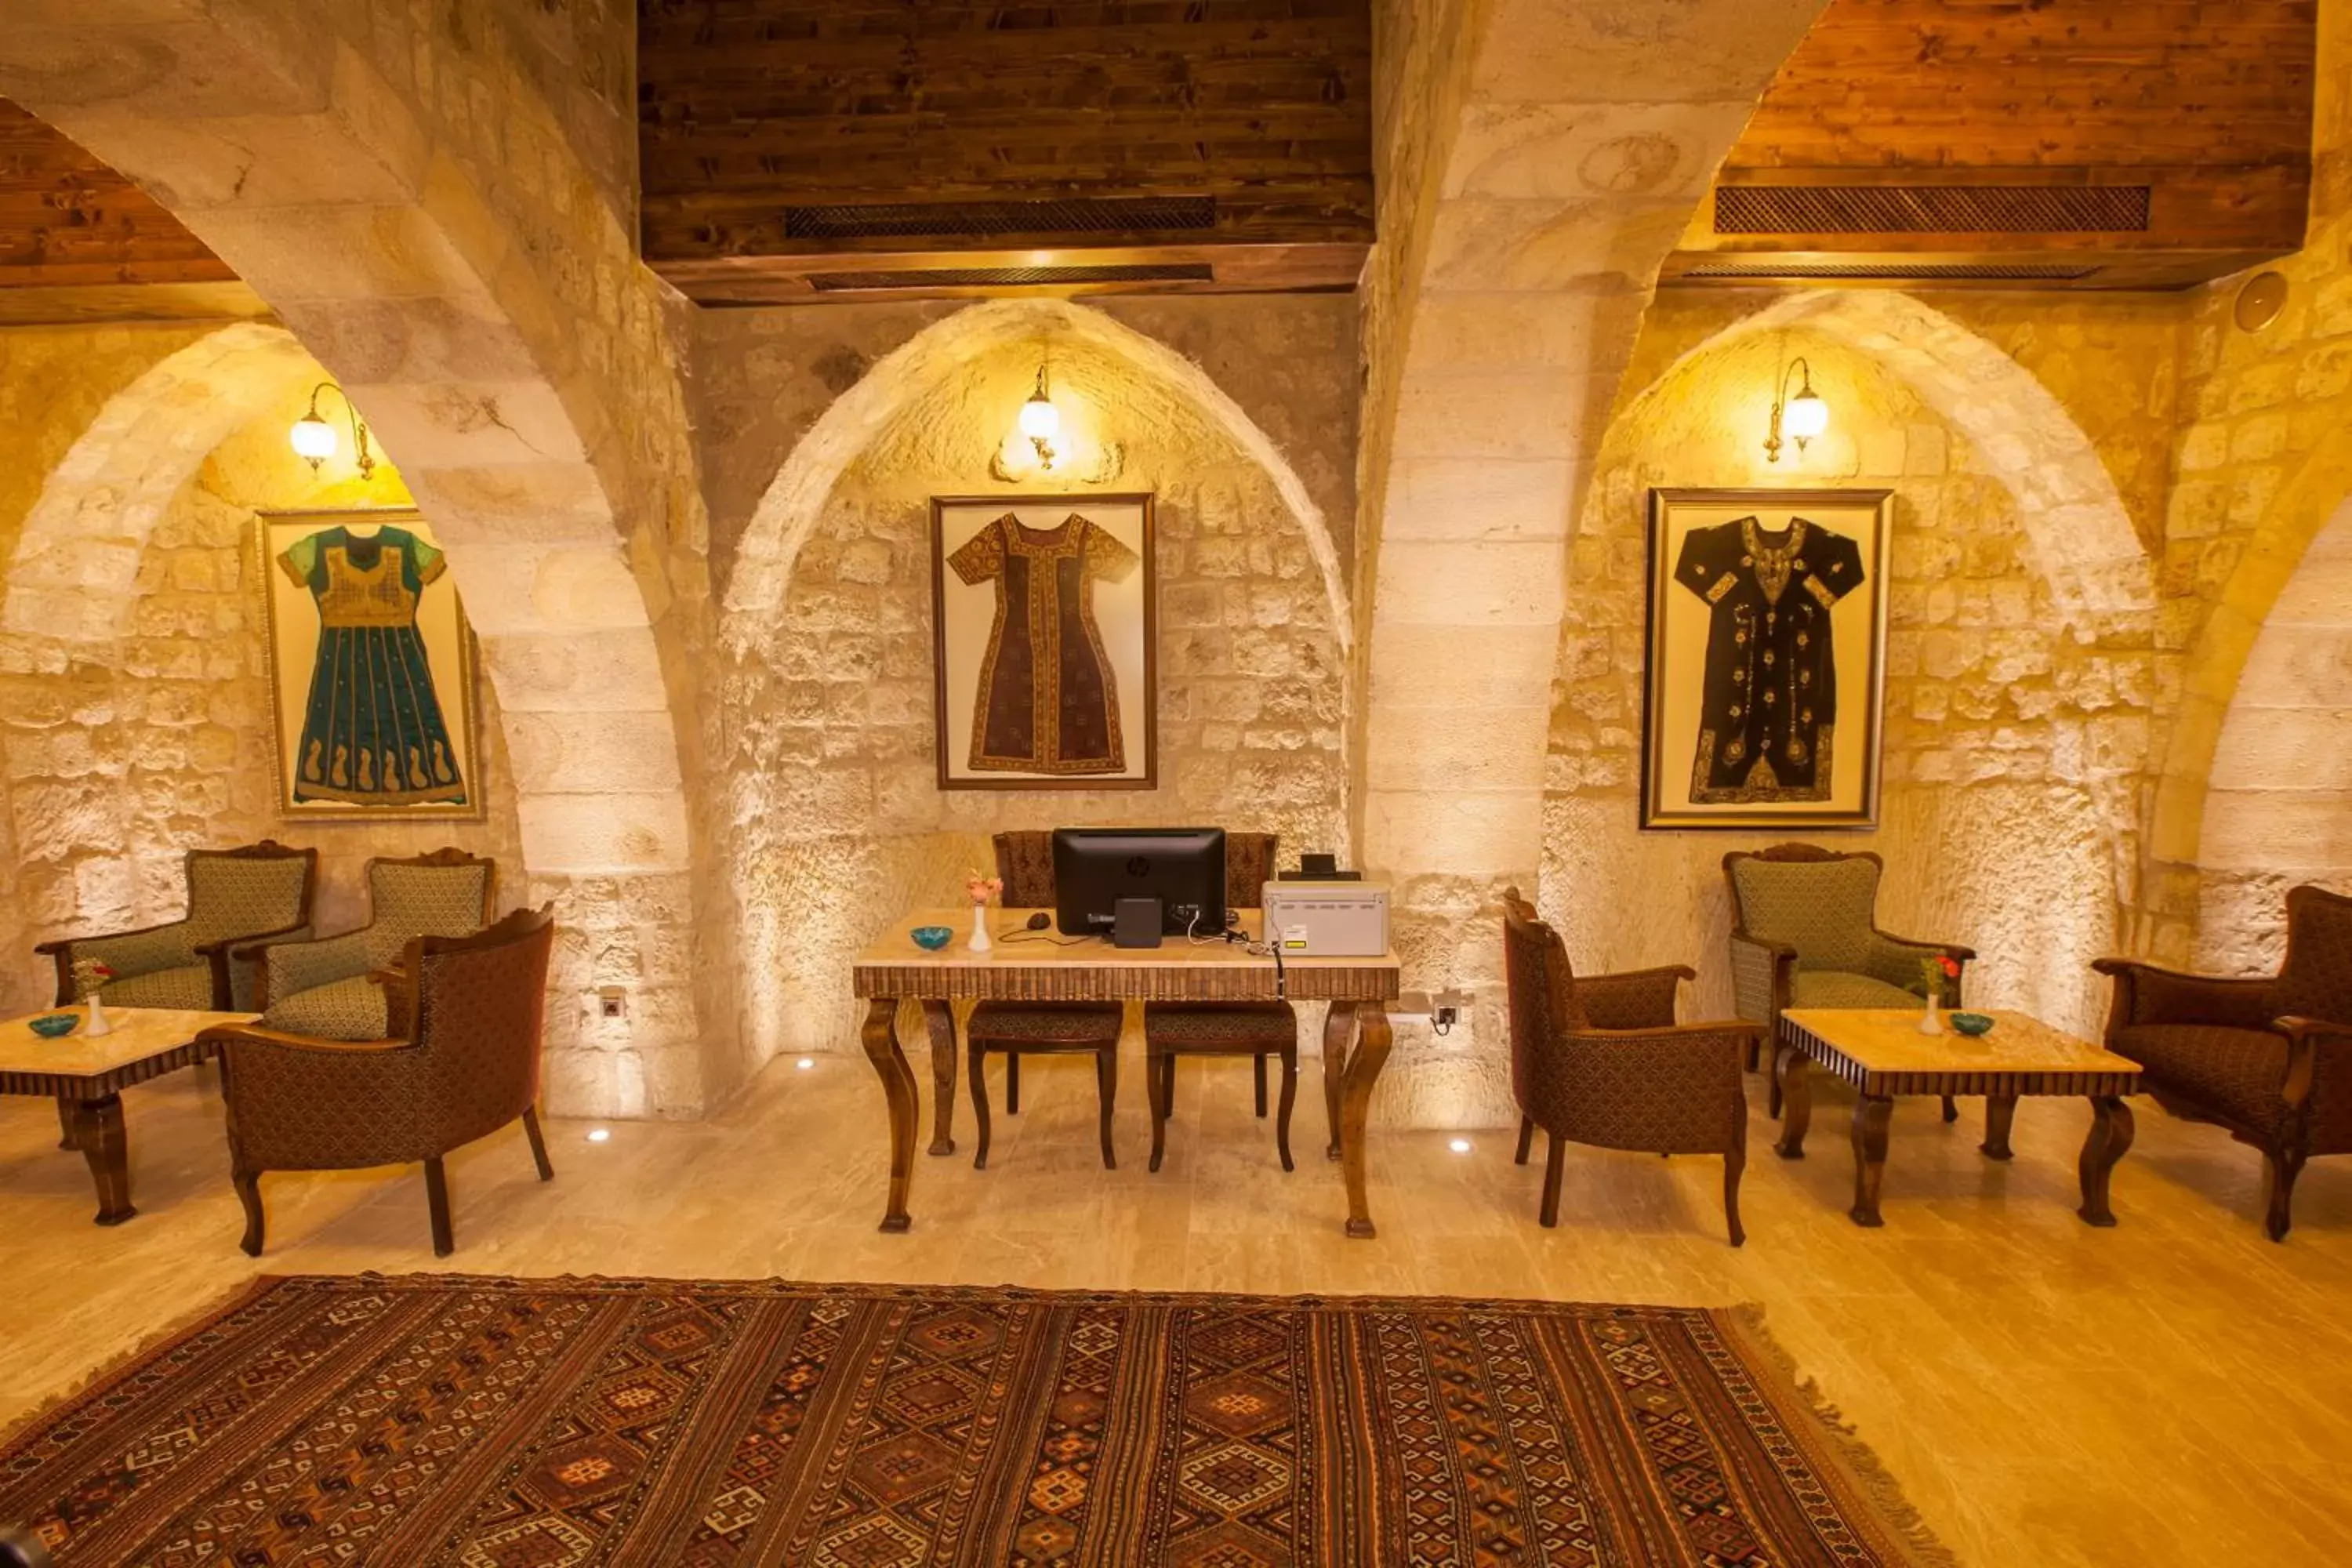 Lounge or bar in Kayakapi Premium Caves Cappadocia